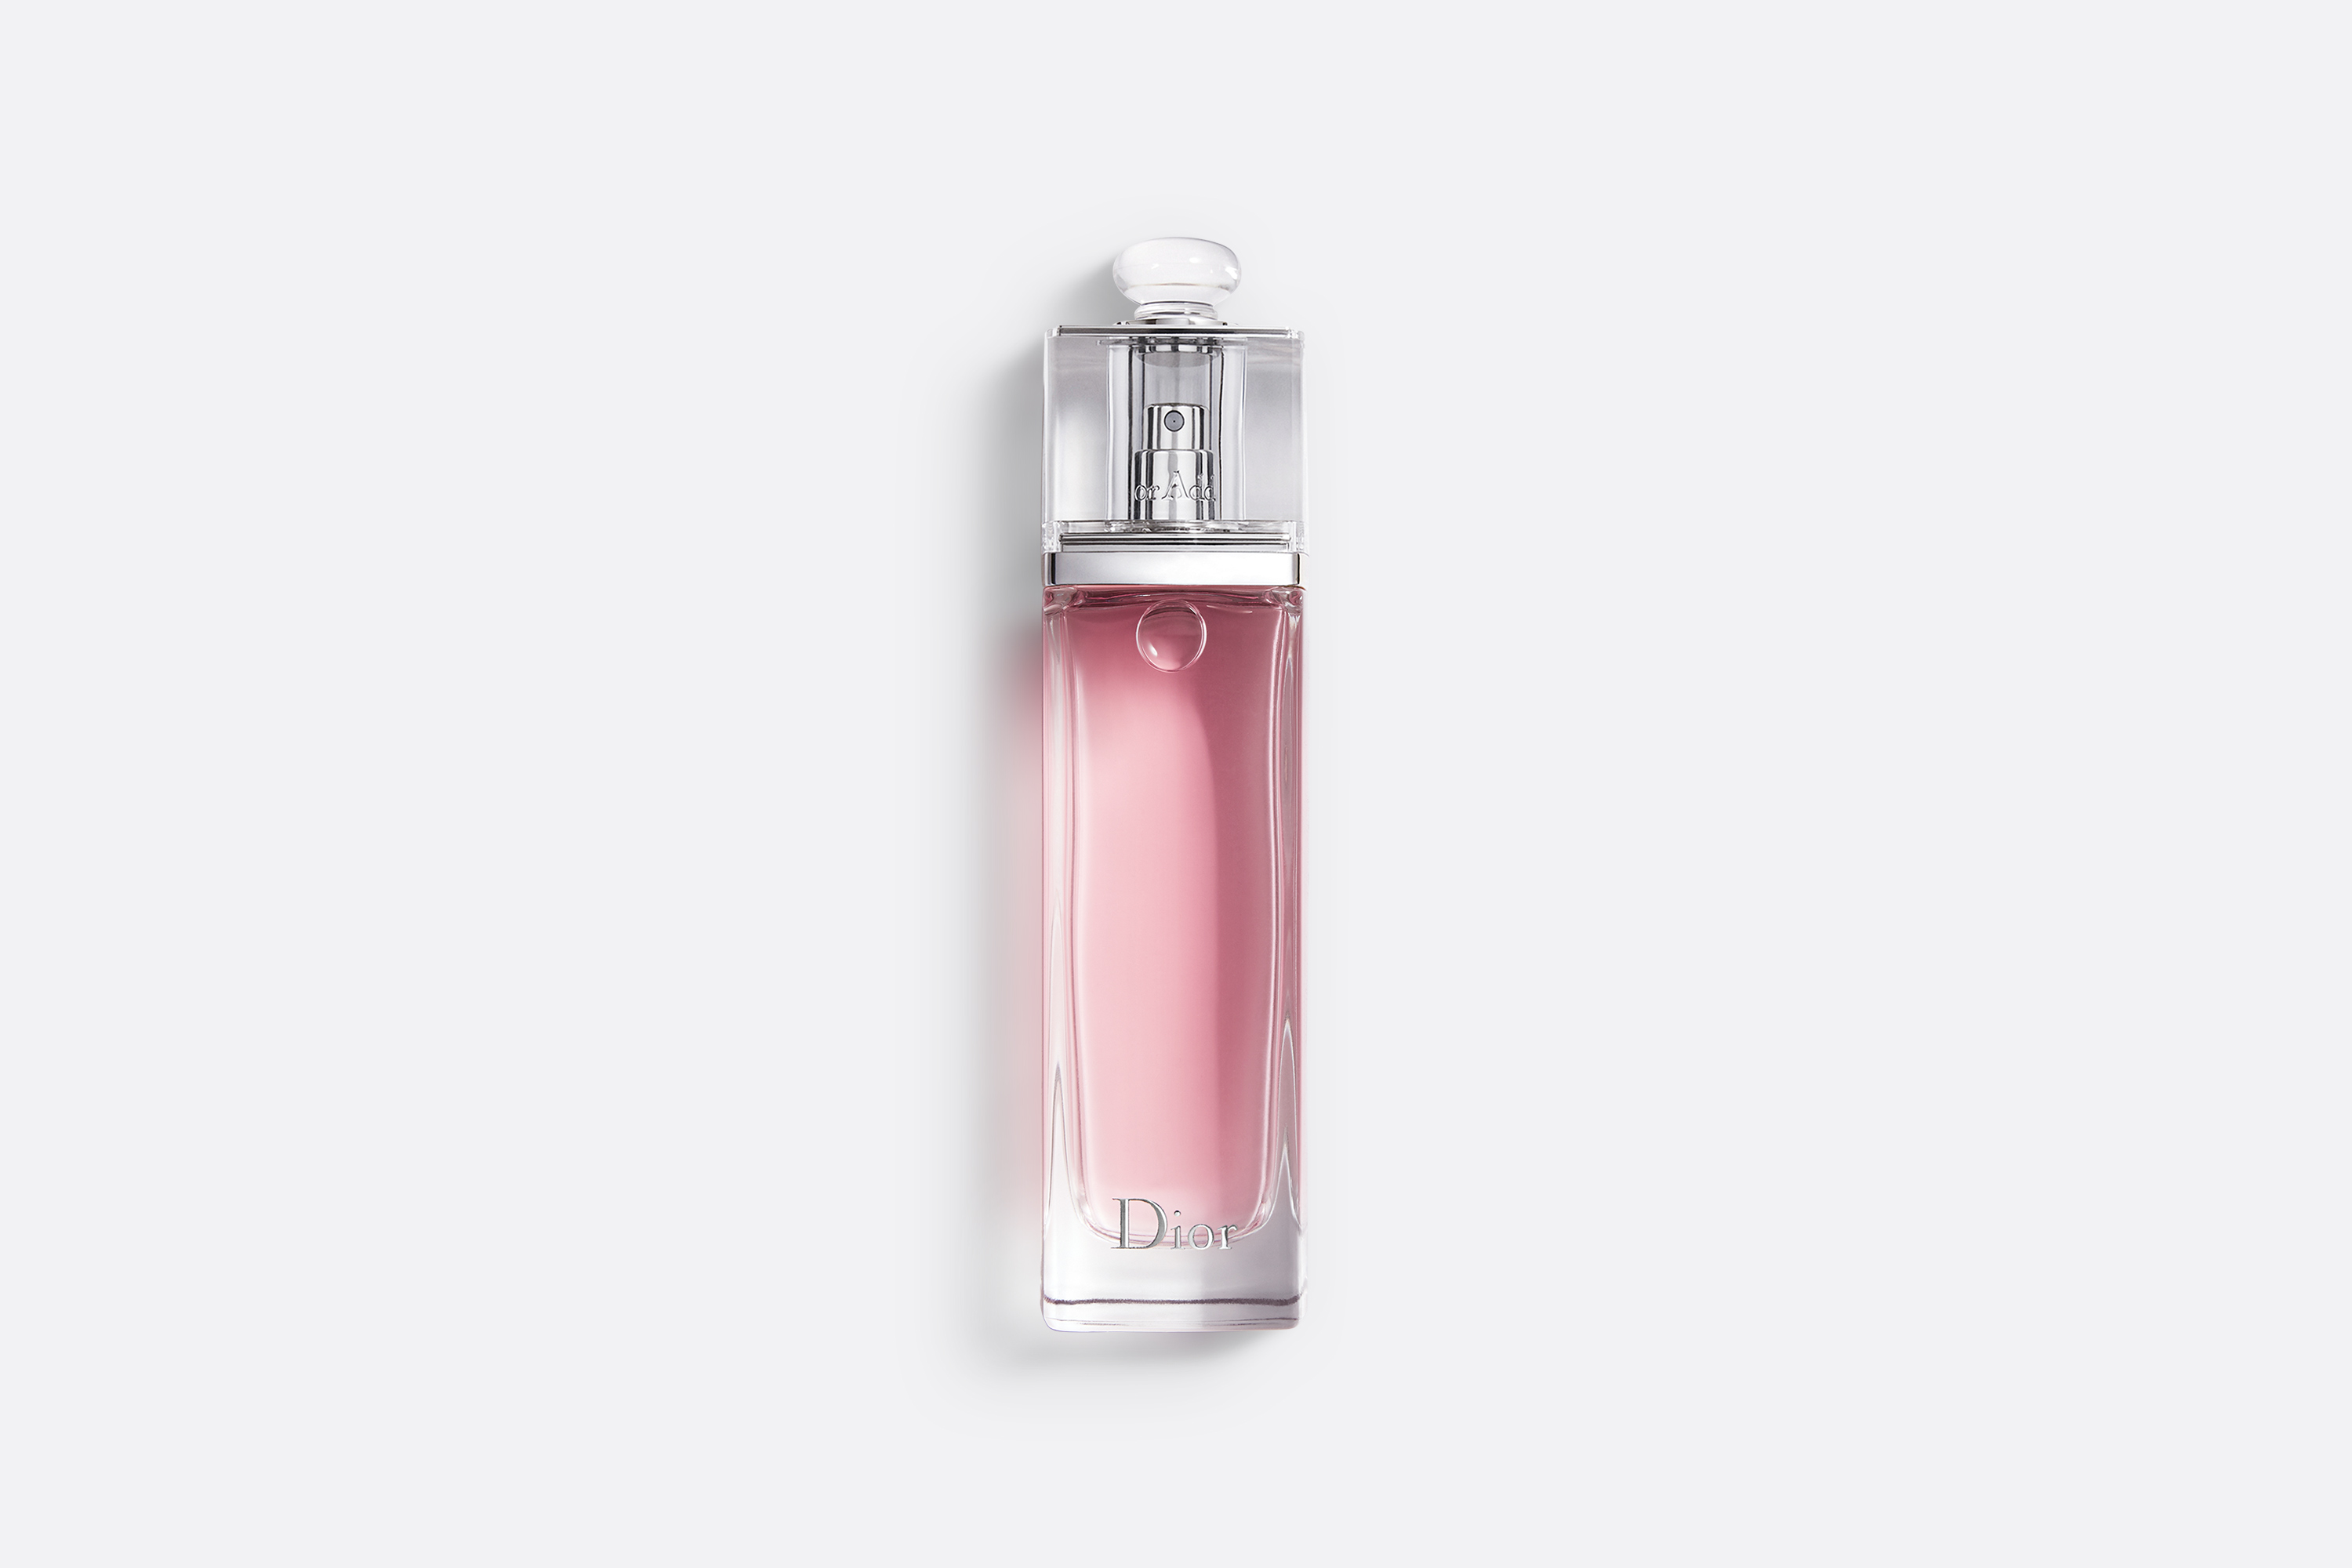 魅惑淡香水- 女香- 香氛| DIOR dior.cn